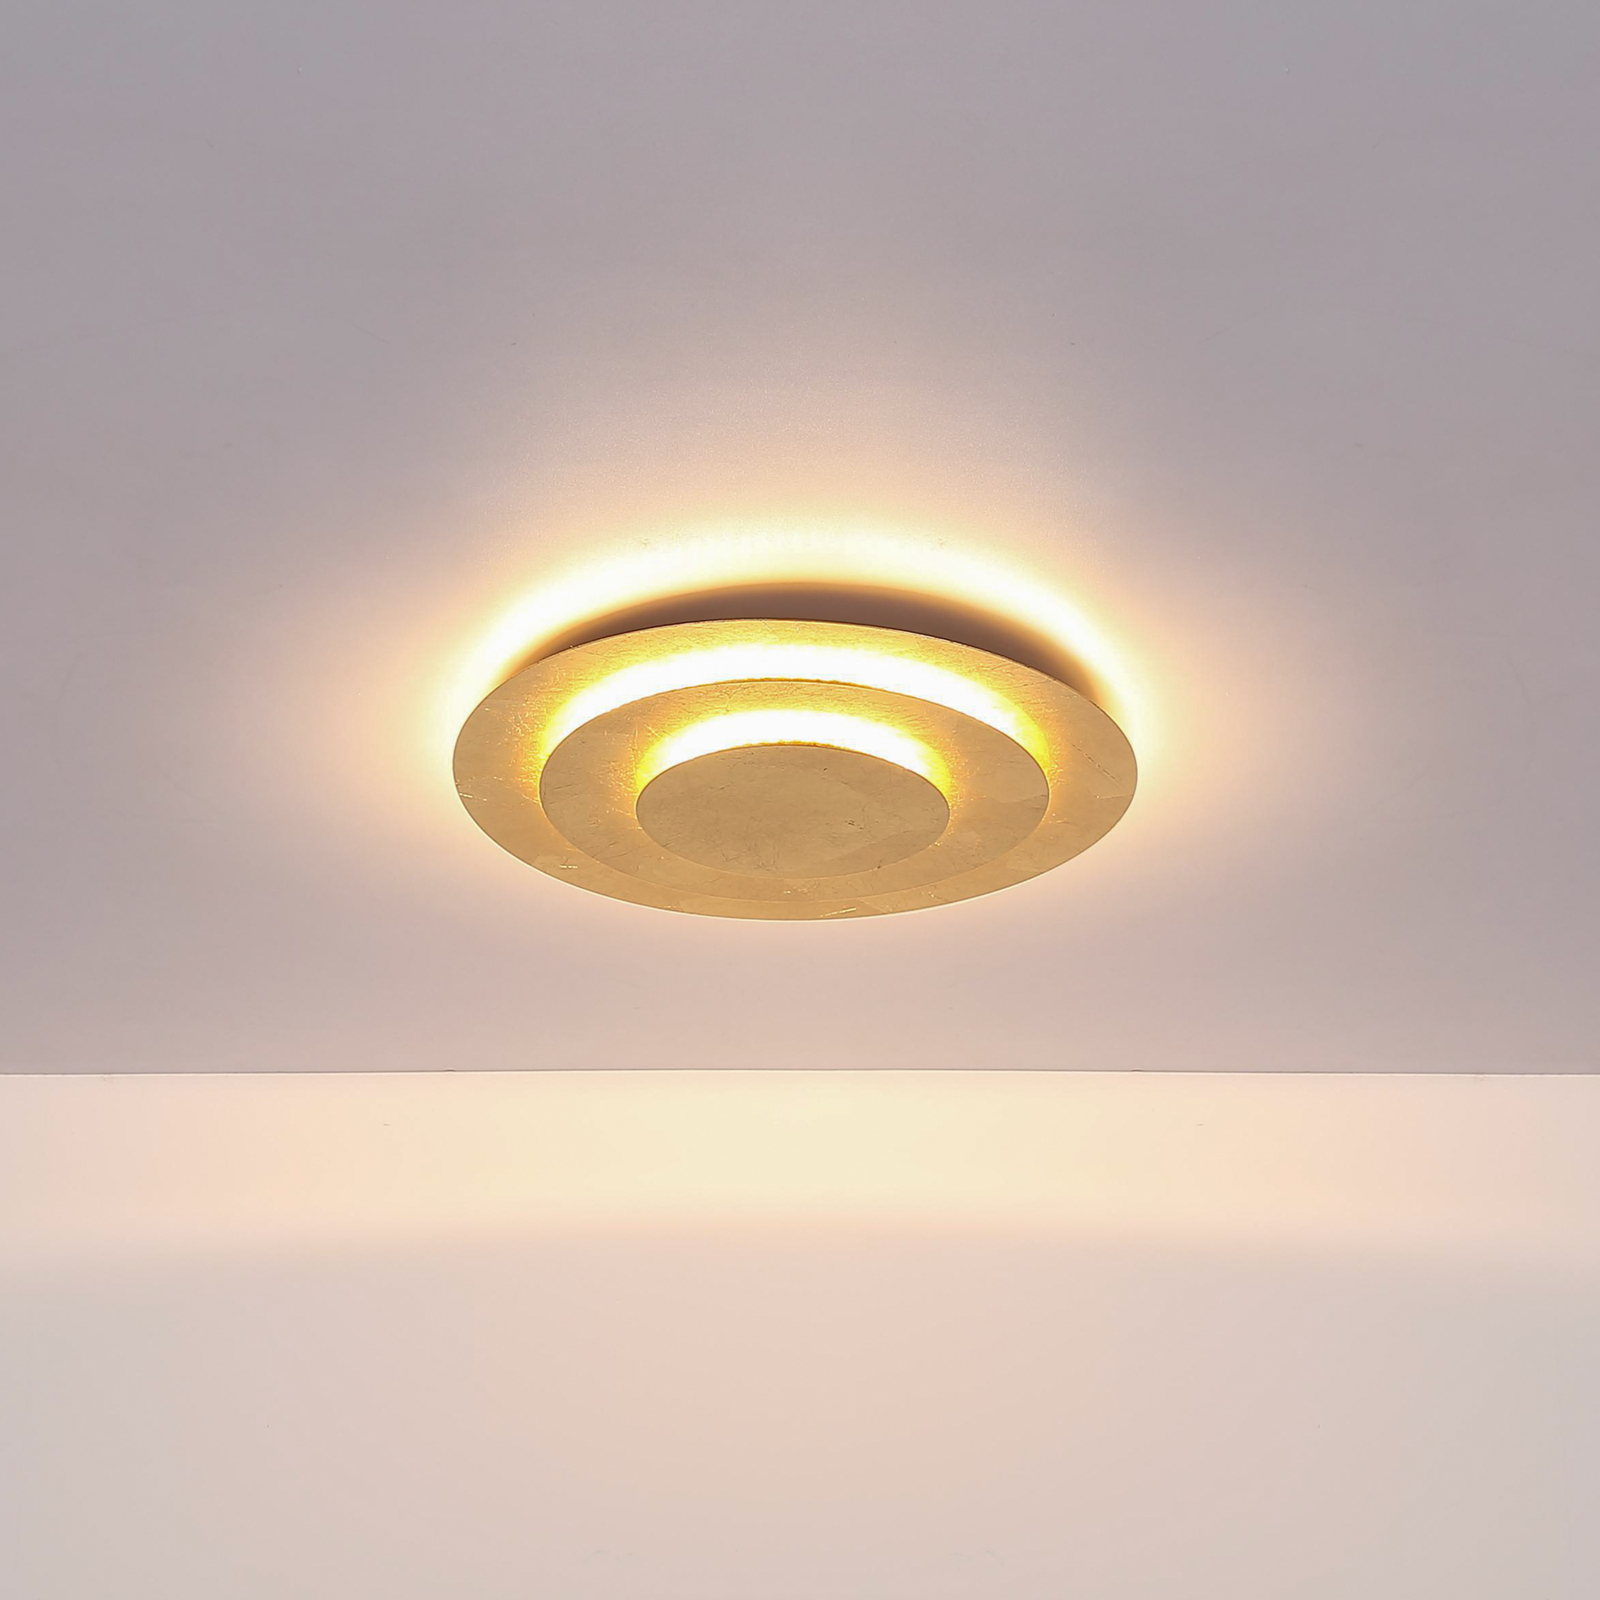 Heda LED ceiling light, Ø 35 cm, gold-coloured, metal